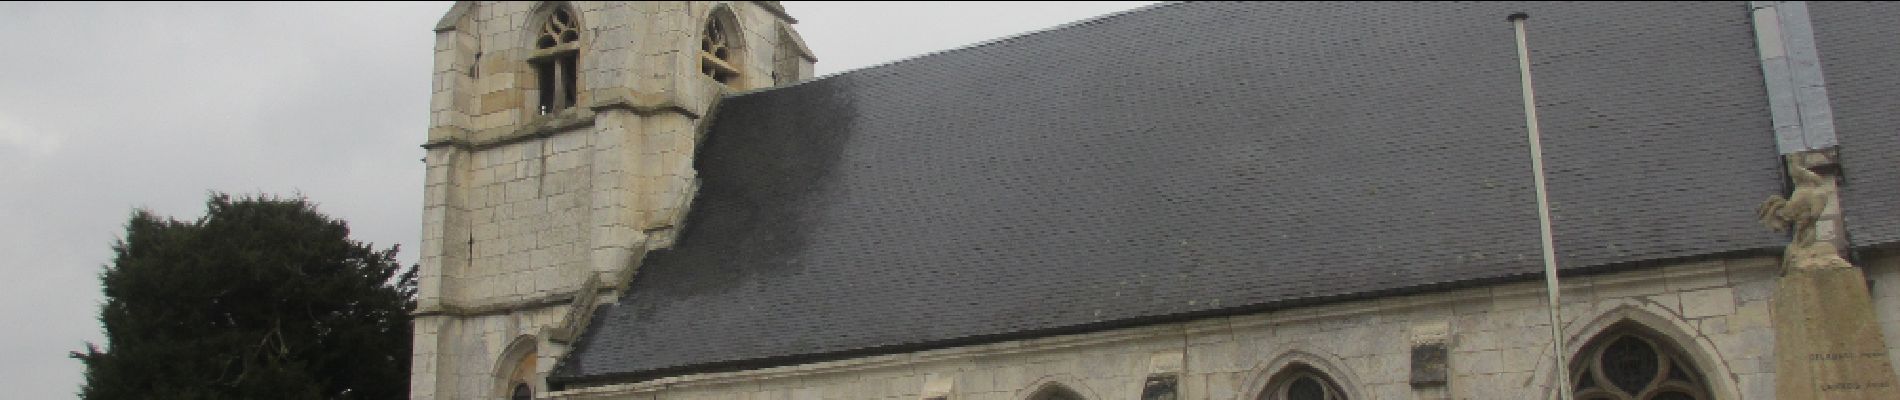 POI Hénouville - Eglise d'Hénouville - Photo